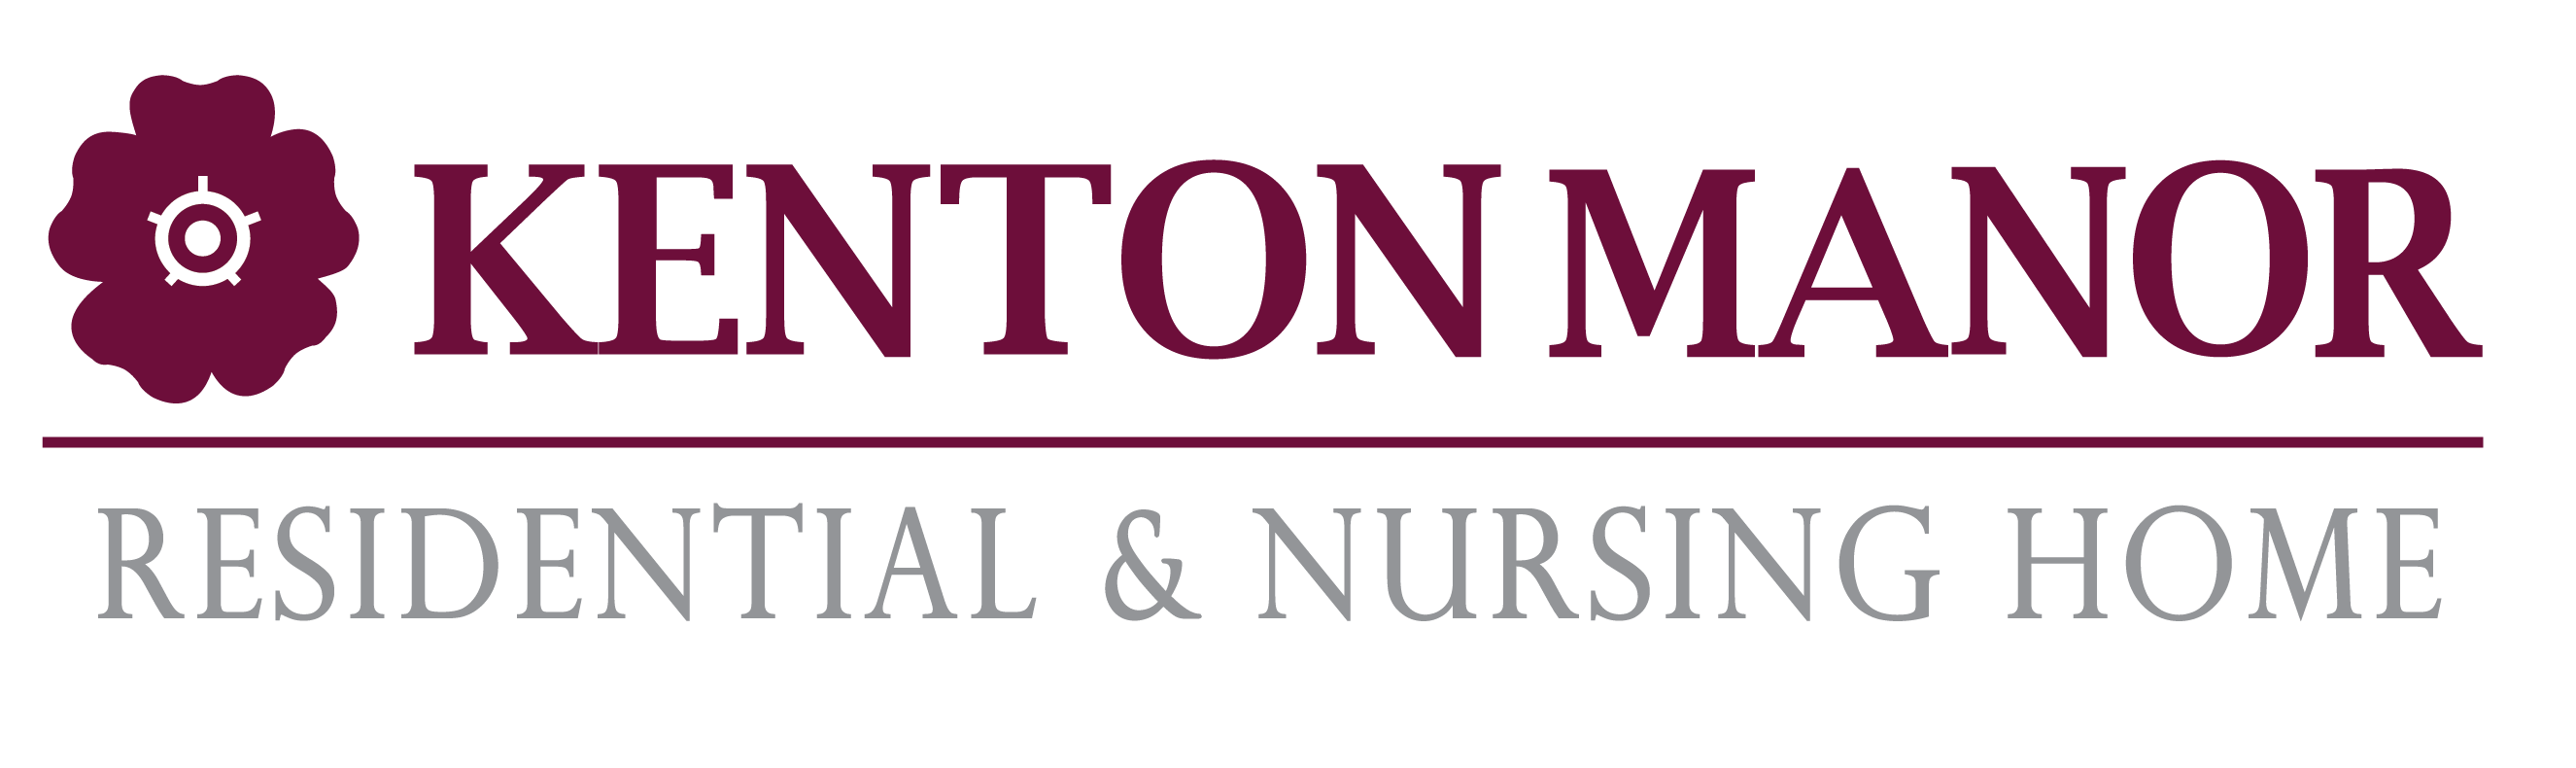 Kenton Manor Care Home logo